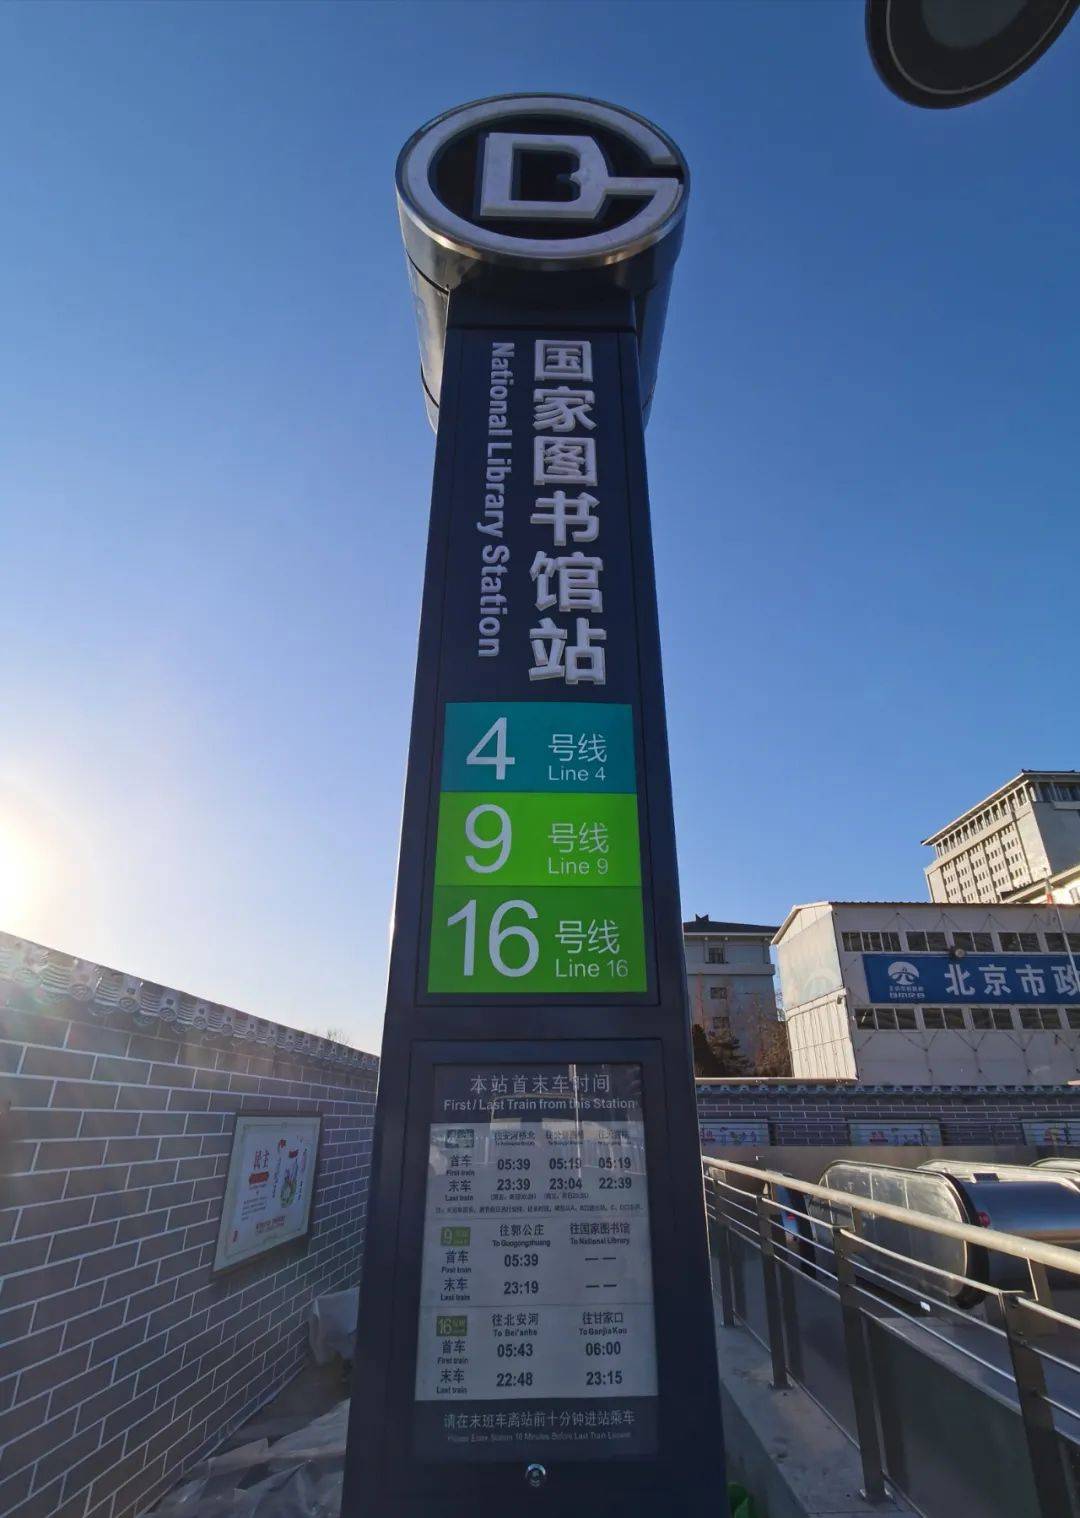 (由于二里沟站和苏州街站出入口将与周边一体化建设,这两座车站将暂缓